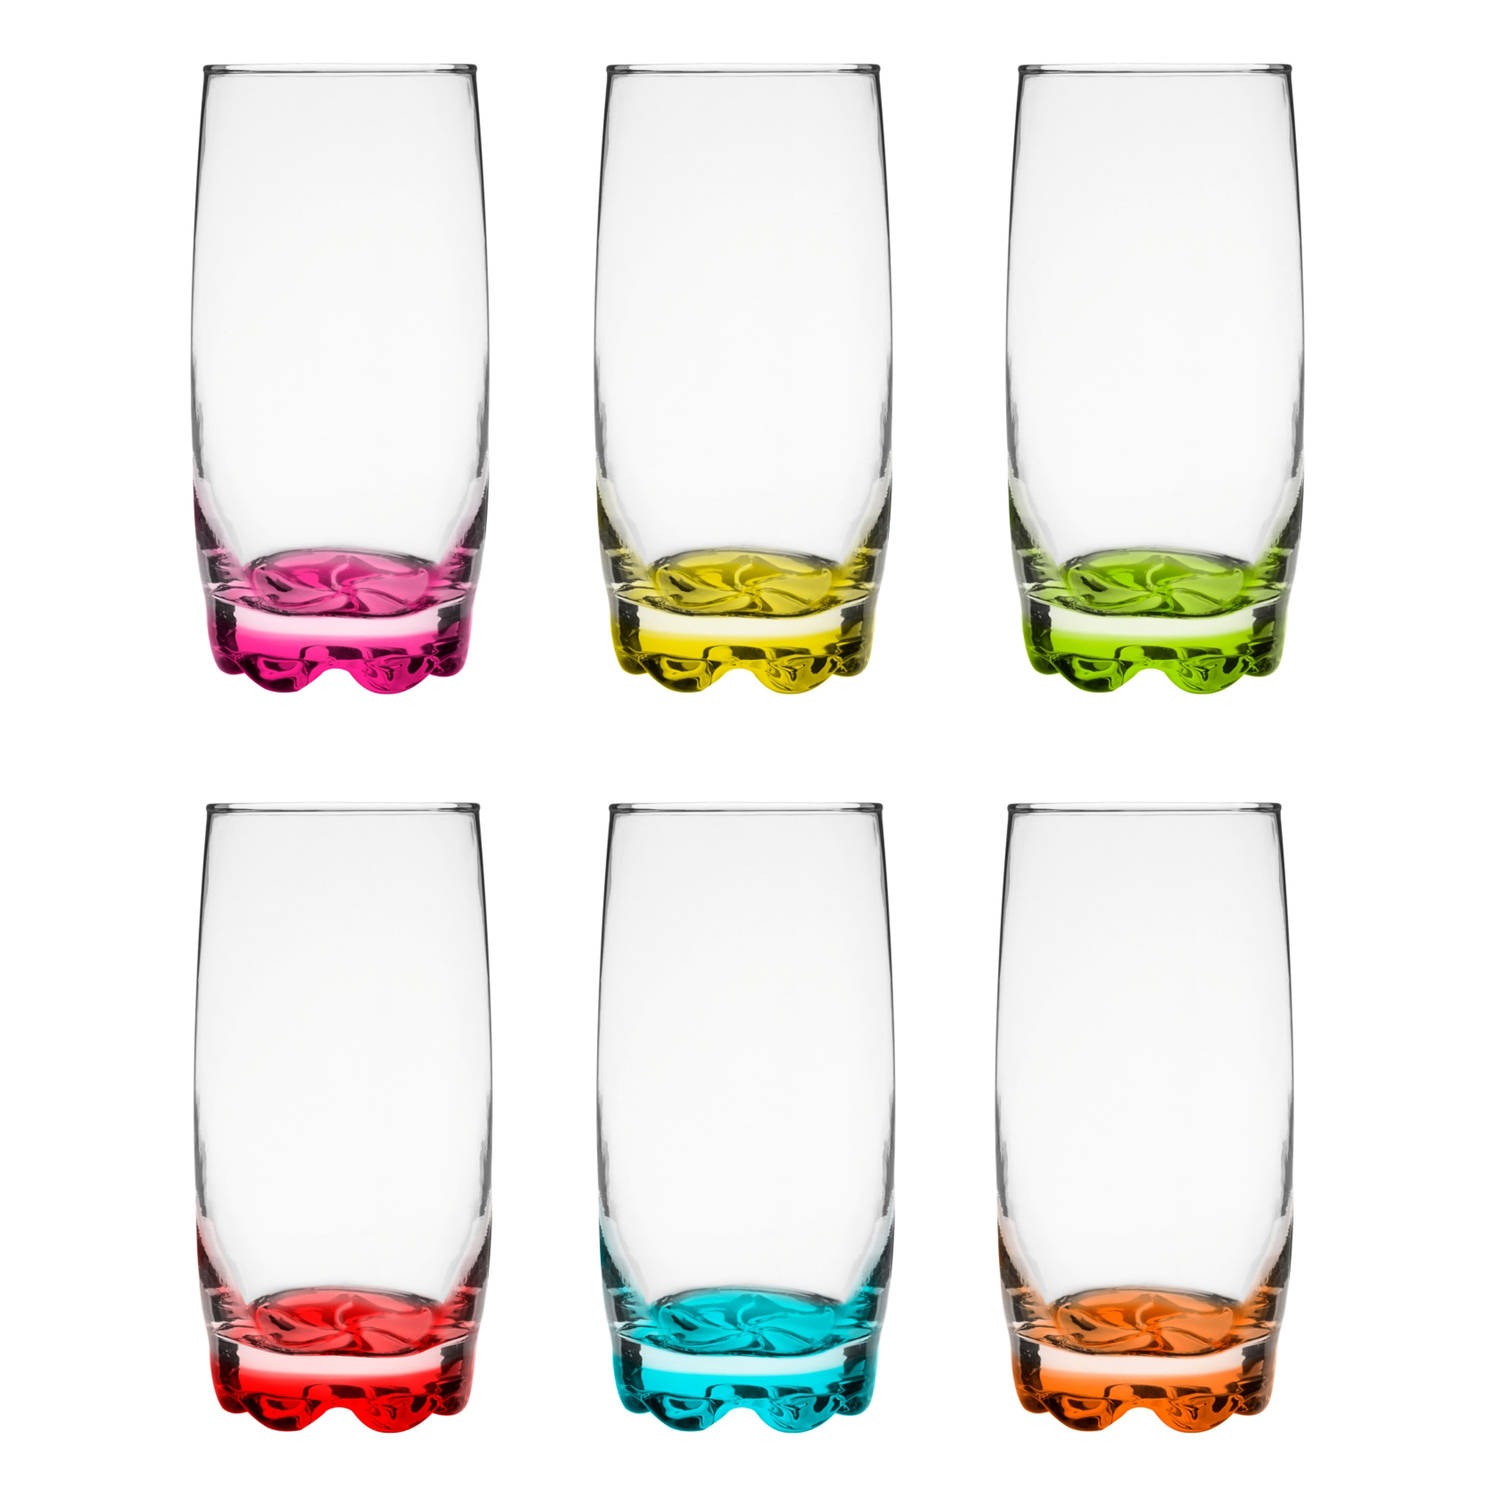 Glasmark longdrink/waterglazen Tumblers - glas - gekleurde basis - 6x stuks - 350 ml